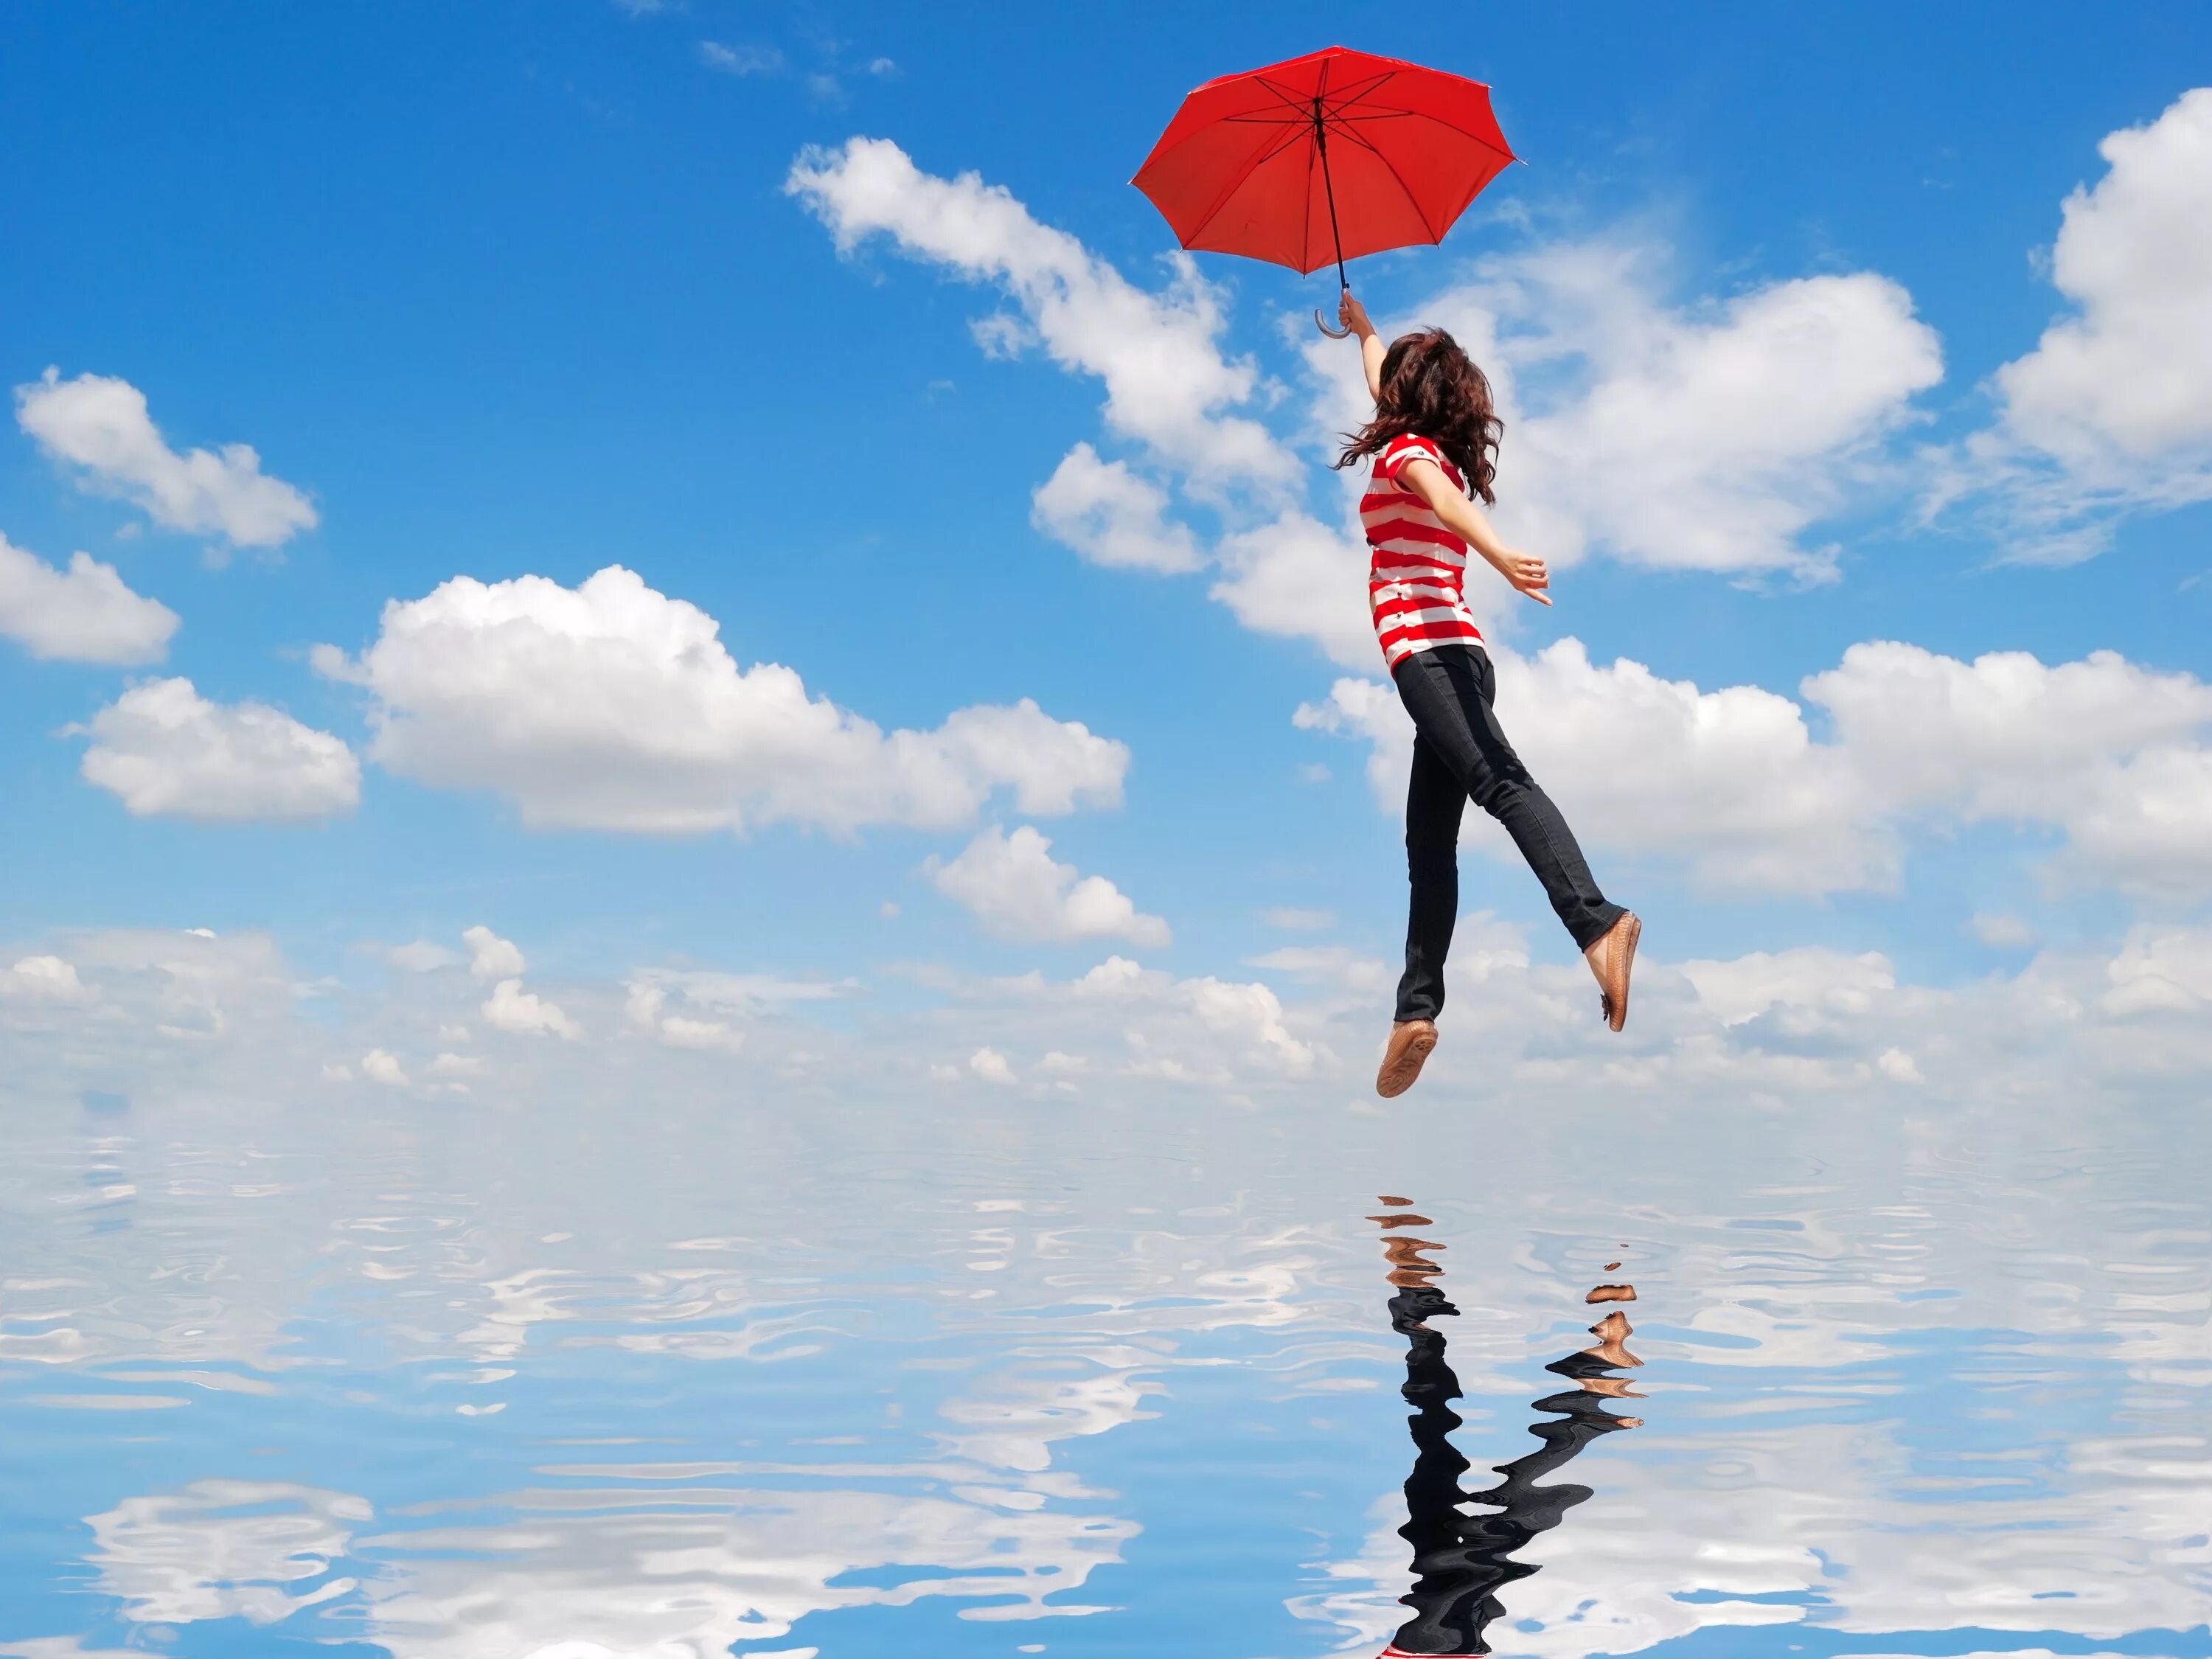 Шагающий по облакам. Девушка с зонтиком в полете. Полет на зонтике. Девушка зонтик счастье. Летающий зонтик.